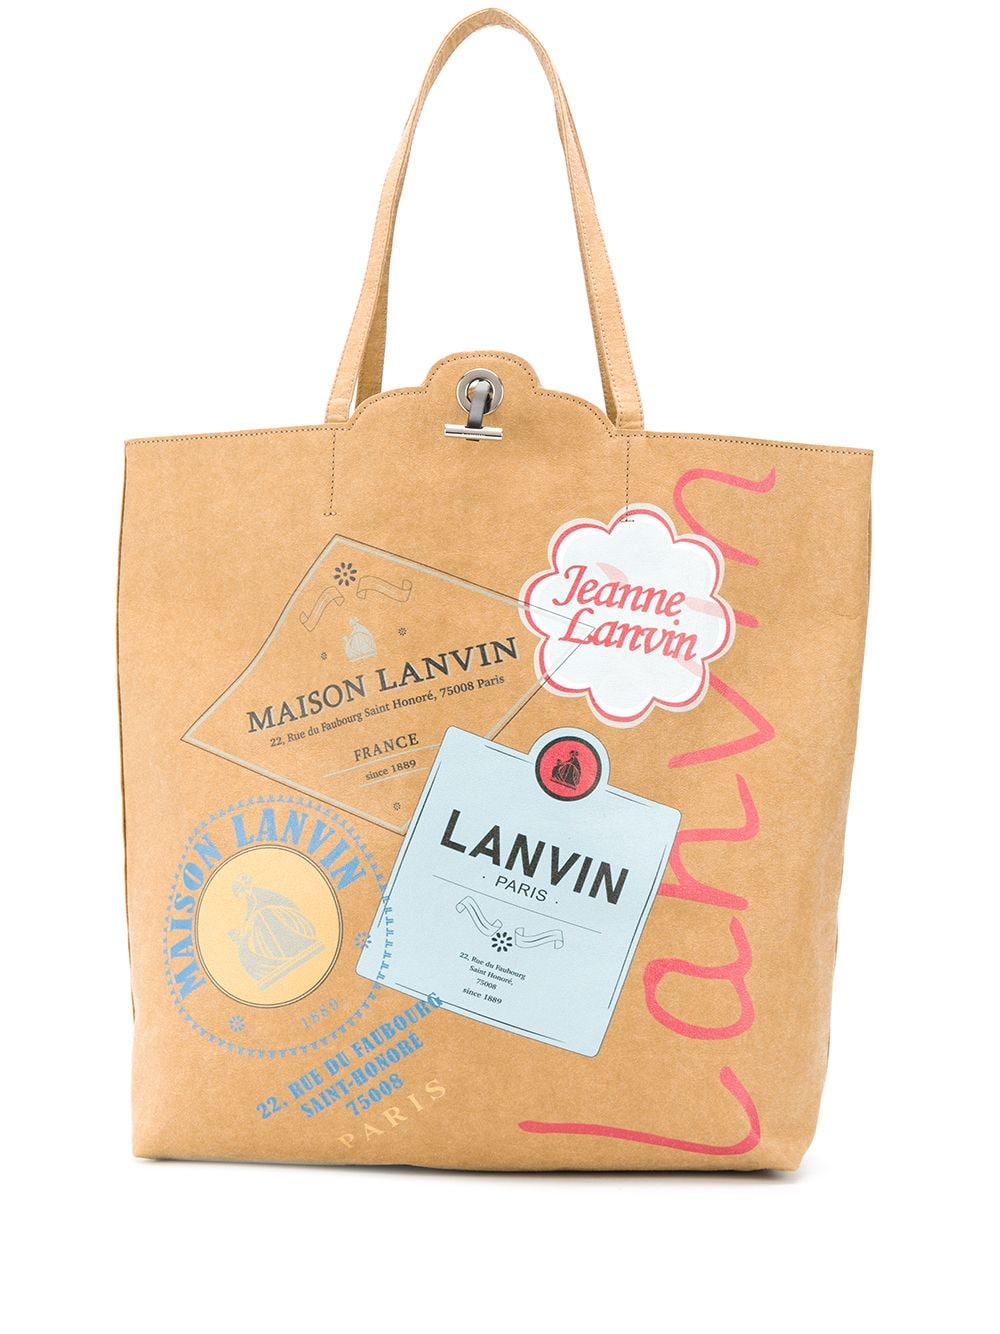 фото Lanvin сумка-тоут grocery с графичным принтом